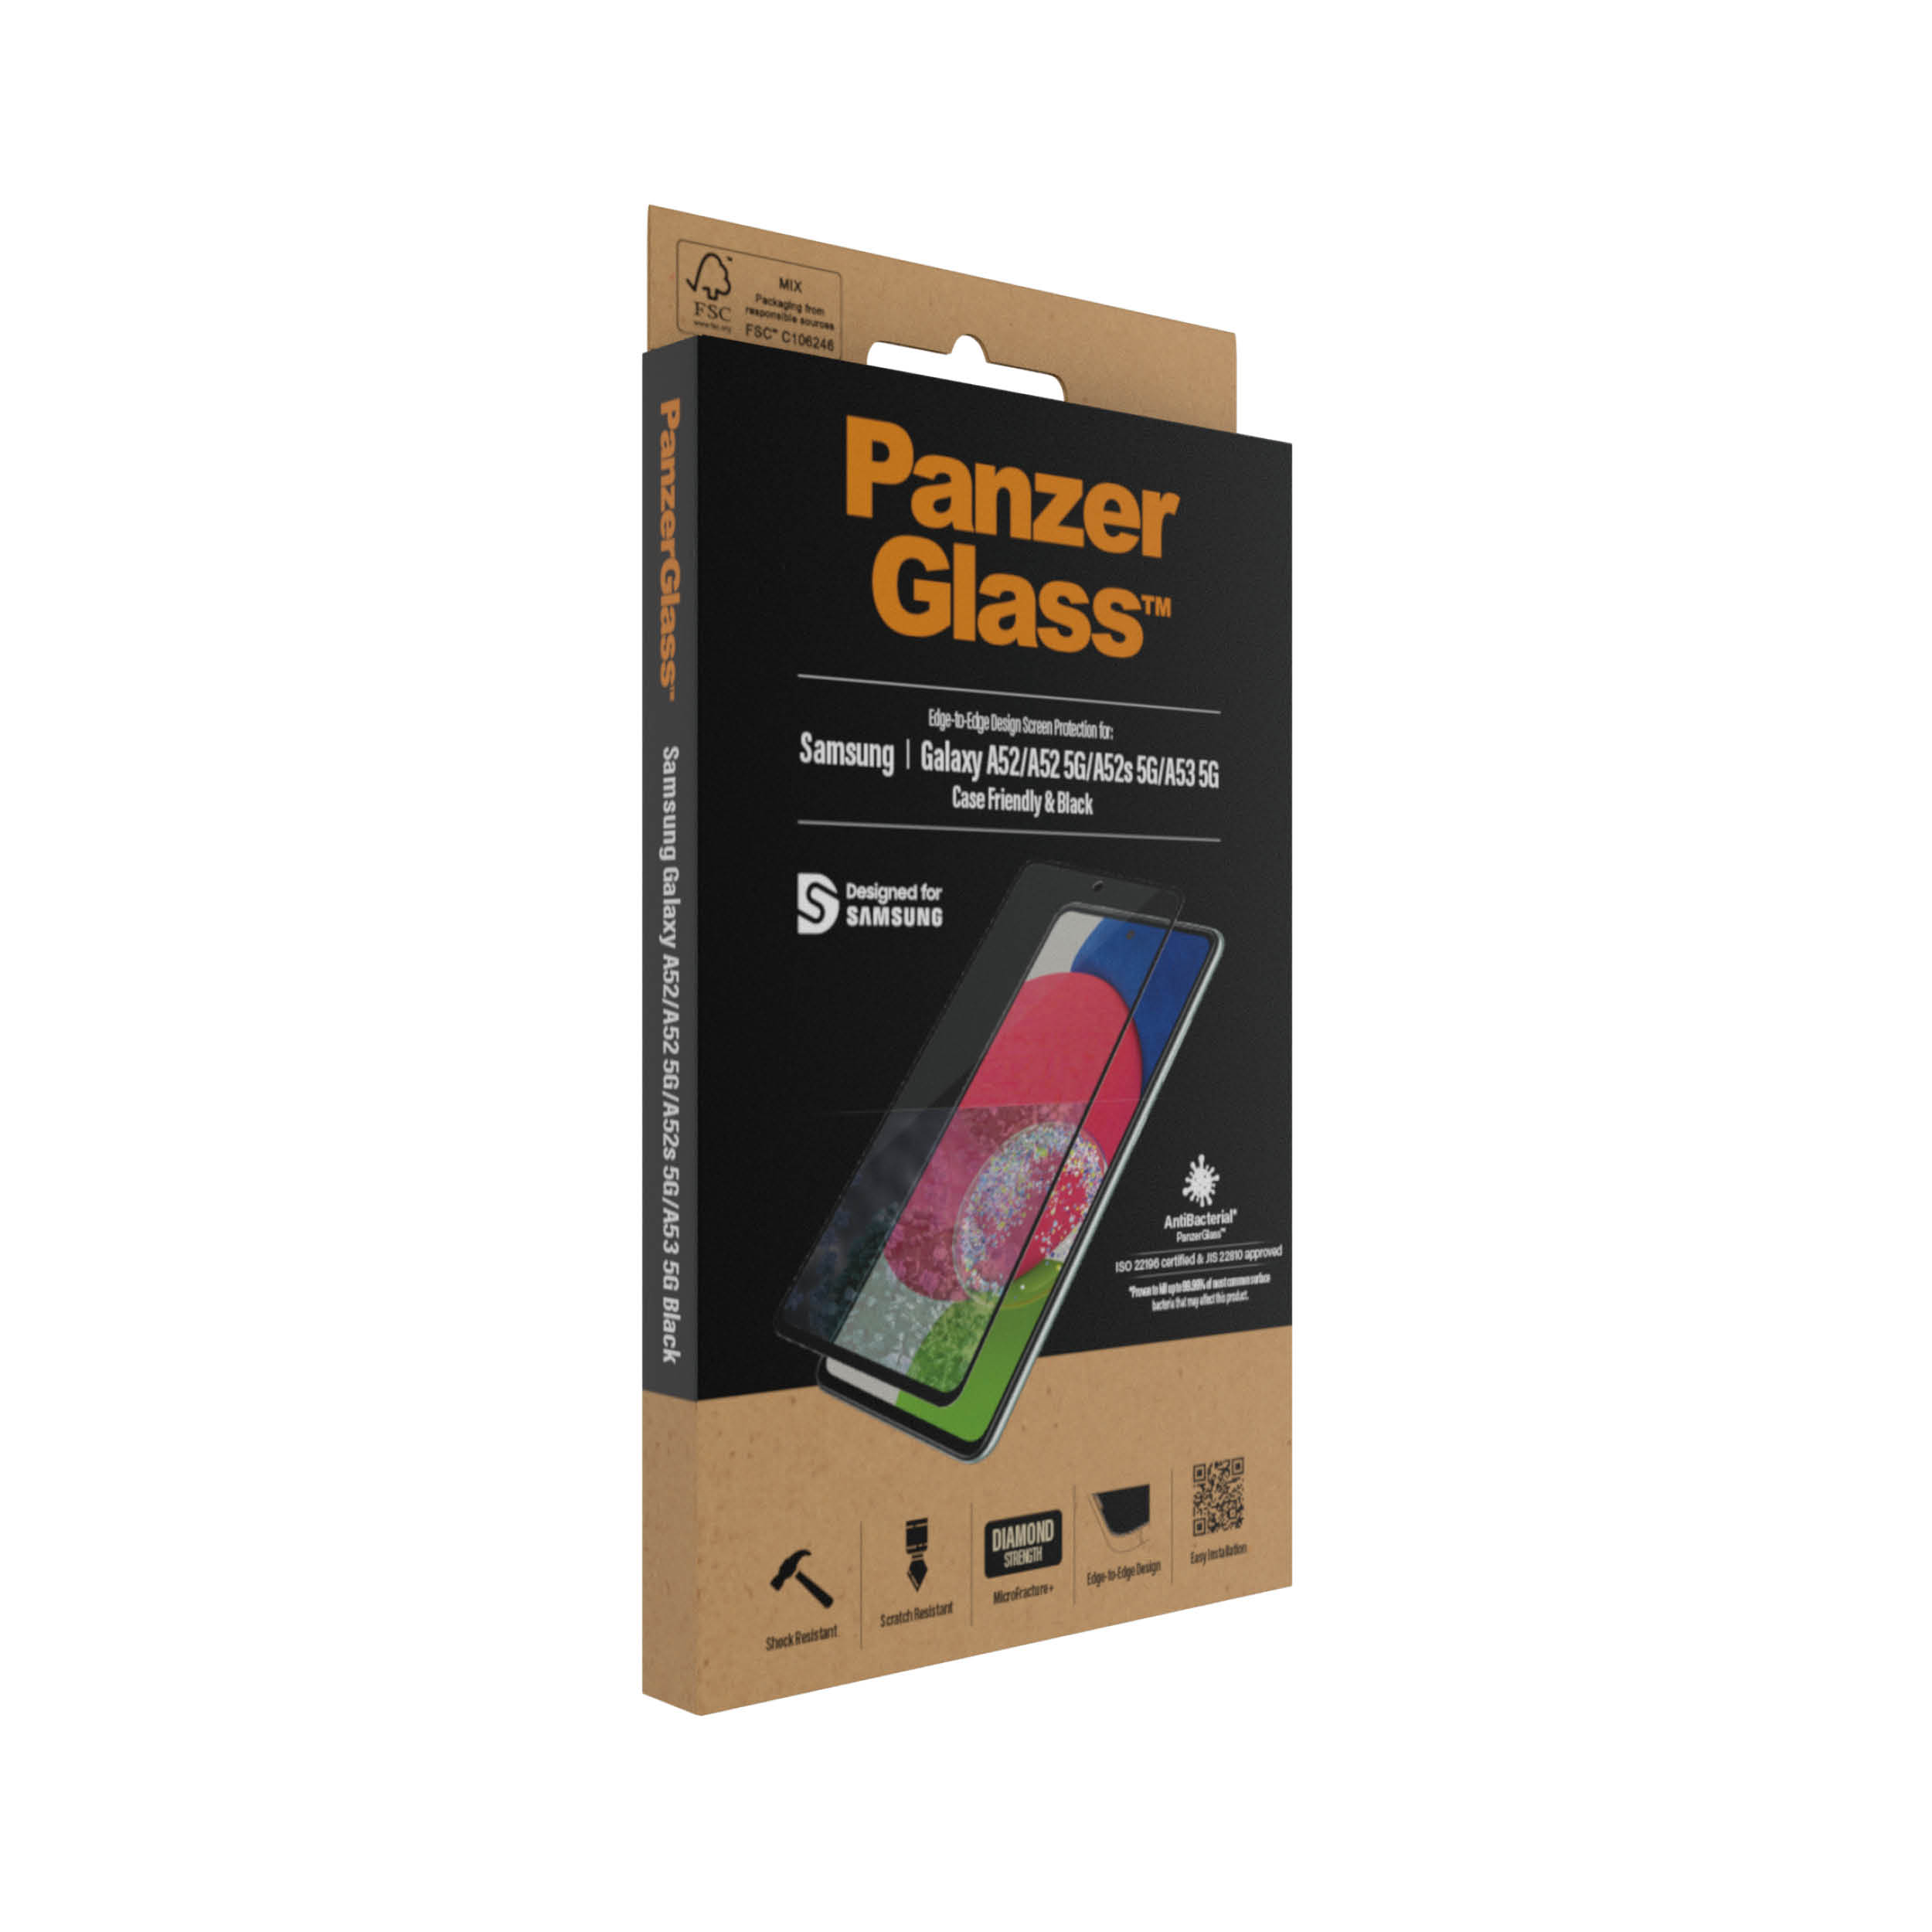 PanzerGlass Samsung Galaxy A52 | A52 5G | A52s 5G | A53 5G | Sticla de protectie pentru ecran thumb